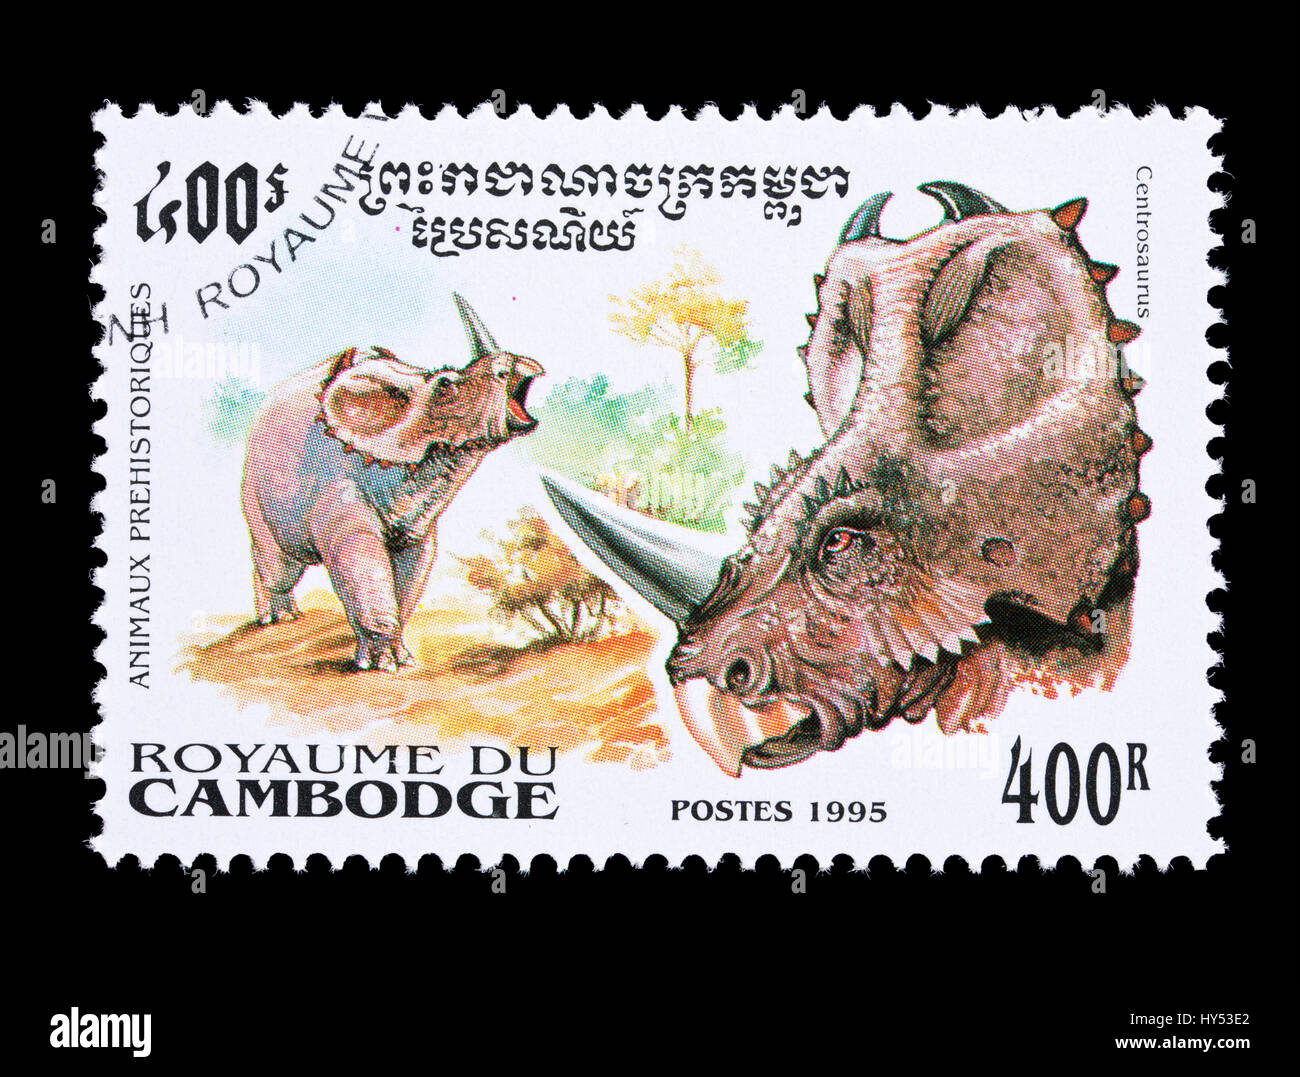 Francobollo da Cambogia raffigurante un dinosauro centrosaurus Foto Stock